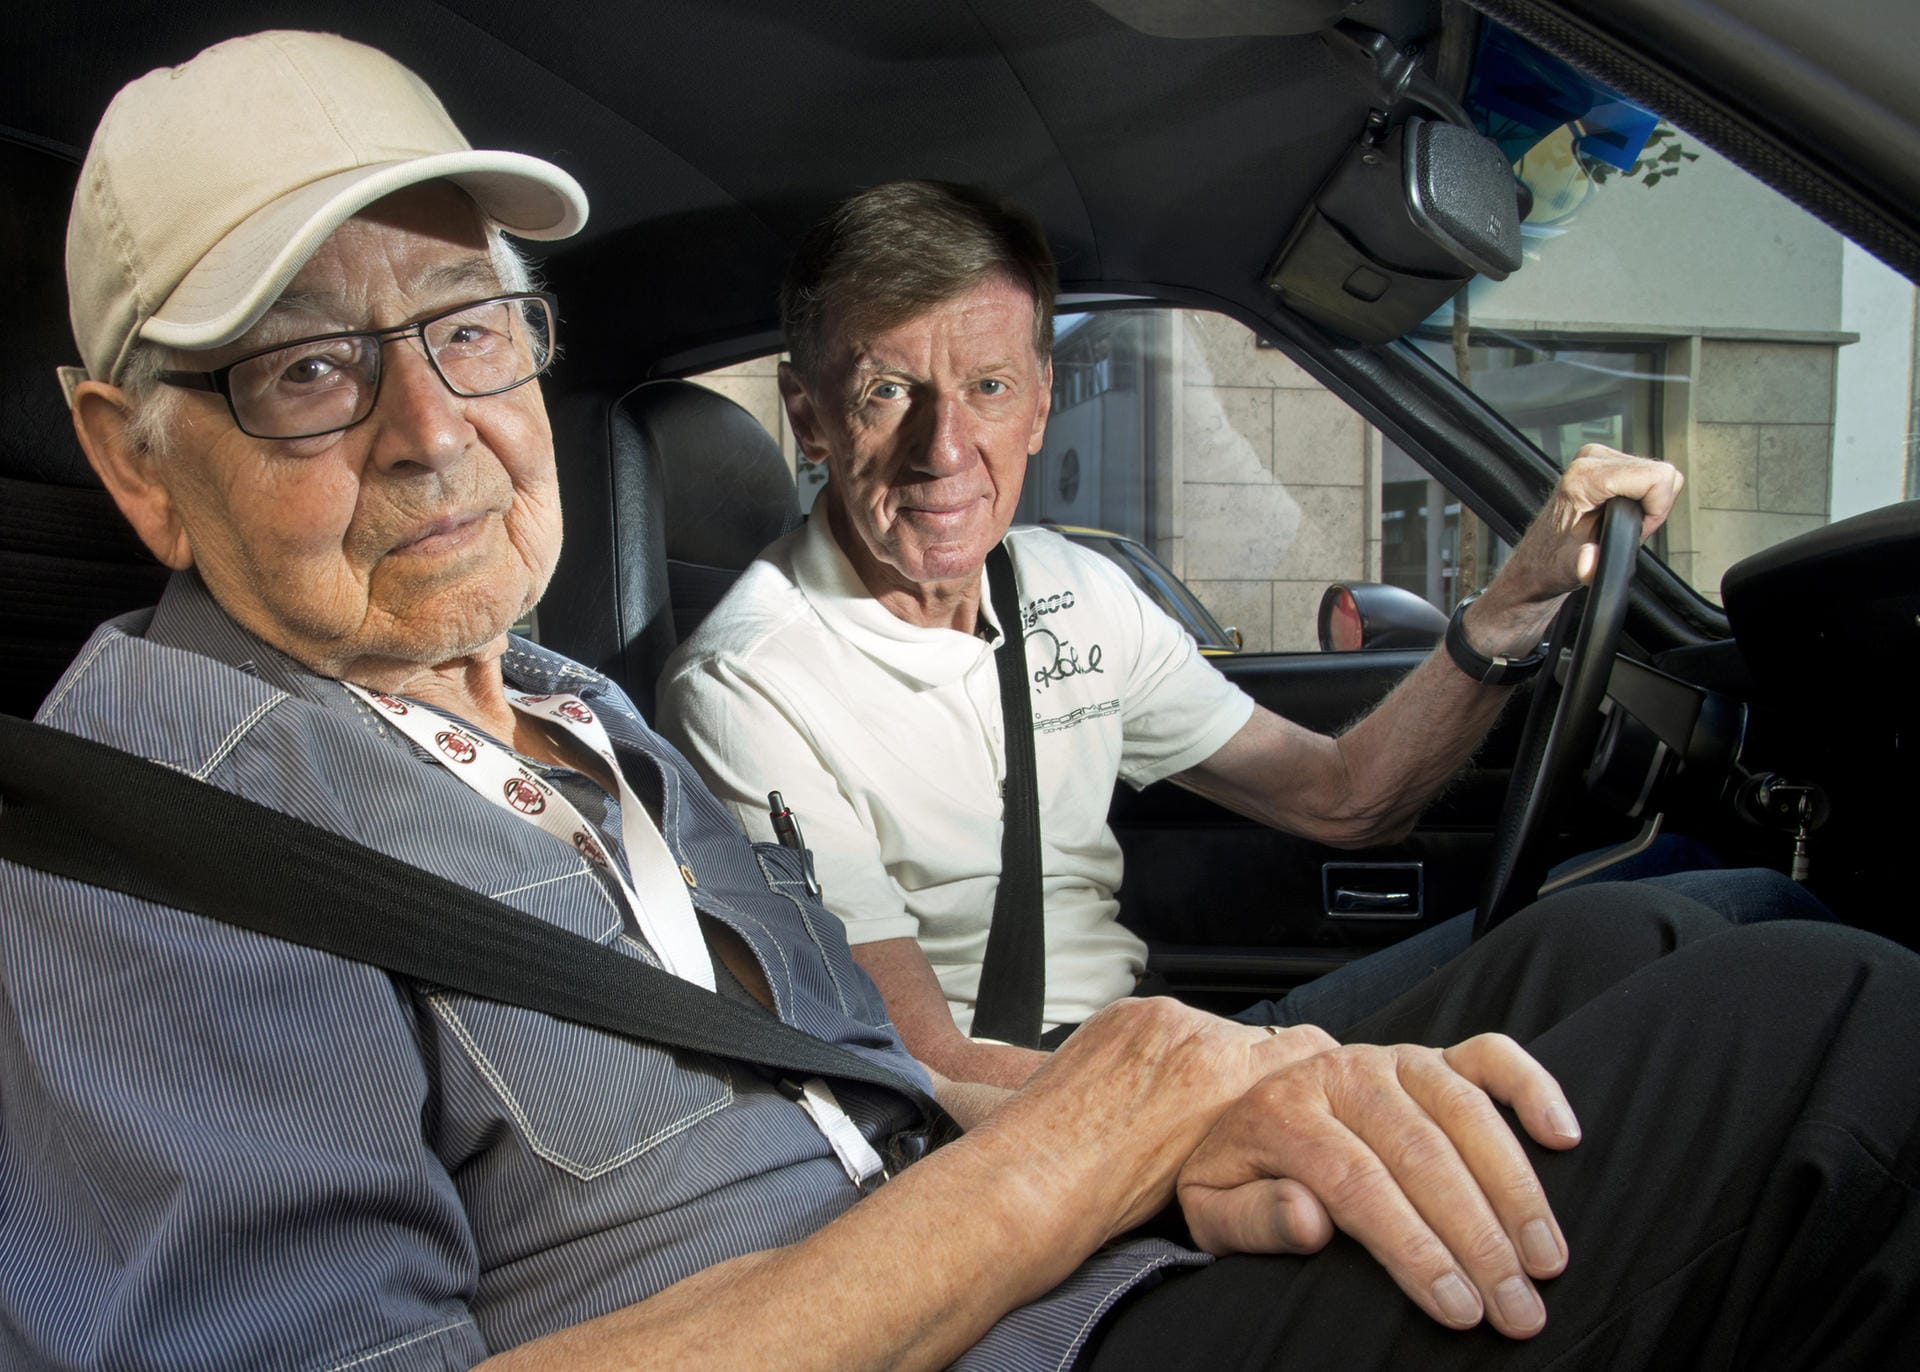 Lebenslange Liebe zum Auto: Schnell bereits im hohen Alter mit Rallye-Legene Walter Röhrl.